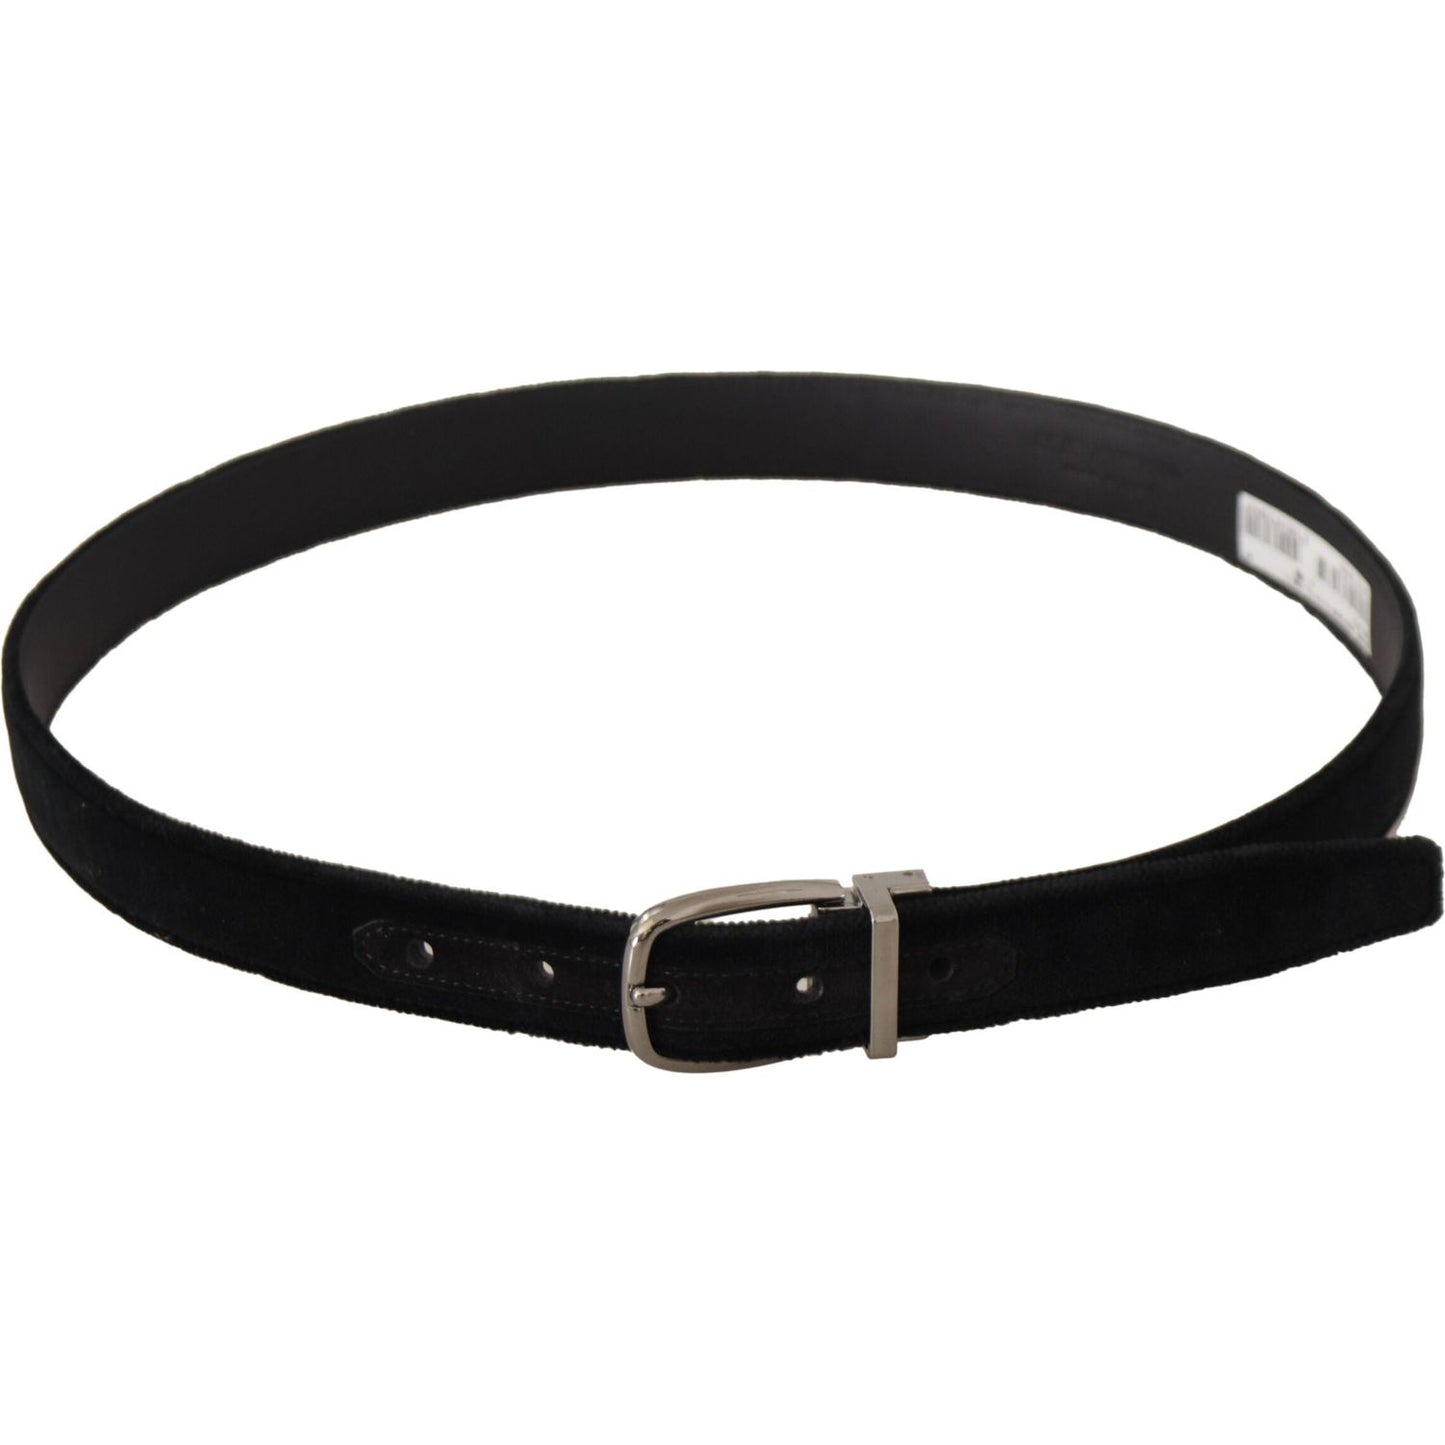 Dolce & Gabbana Elegant Black Velvet Engraved Buckle Belt black-classic-velvet-silver-tone-metal-buckle-belt